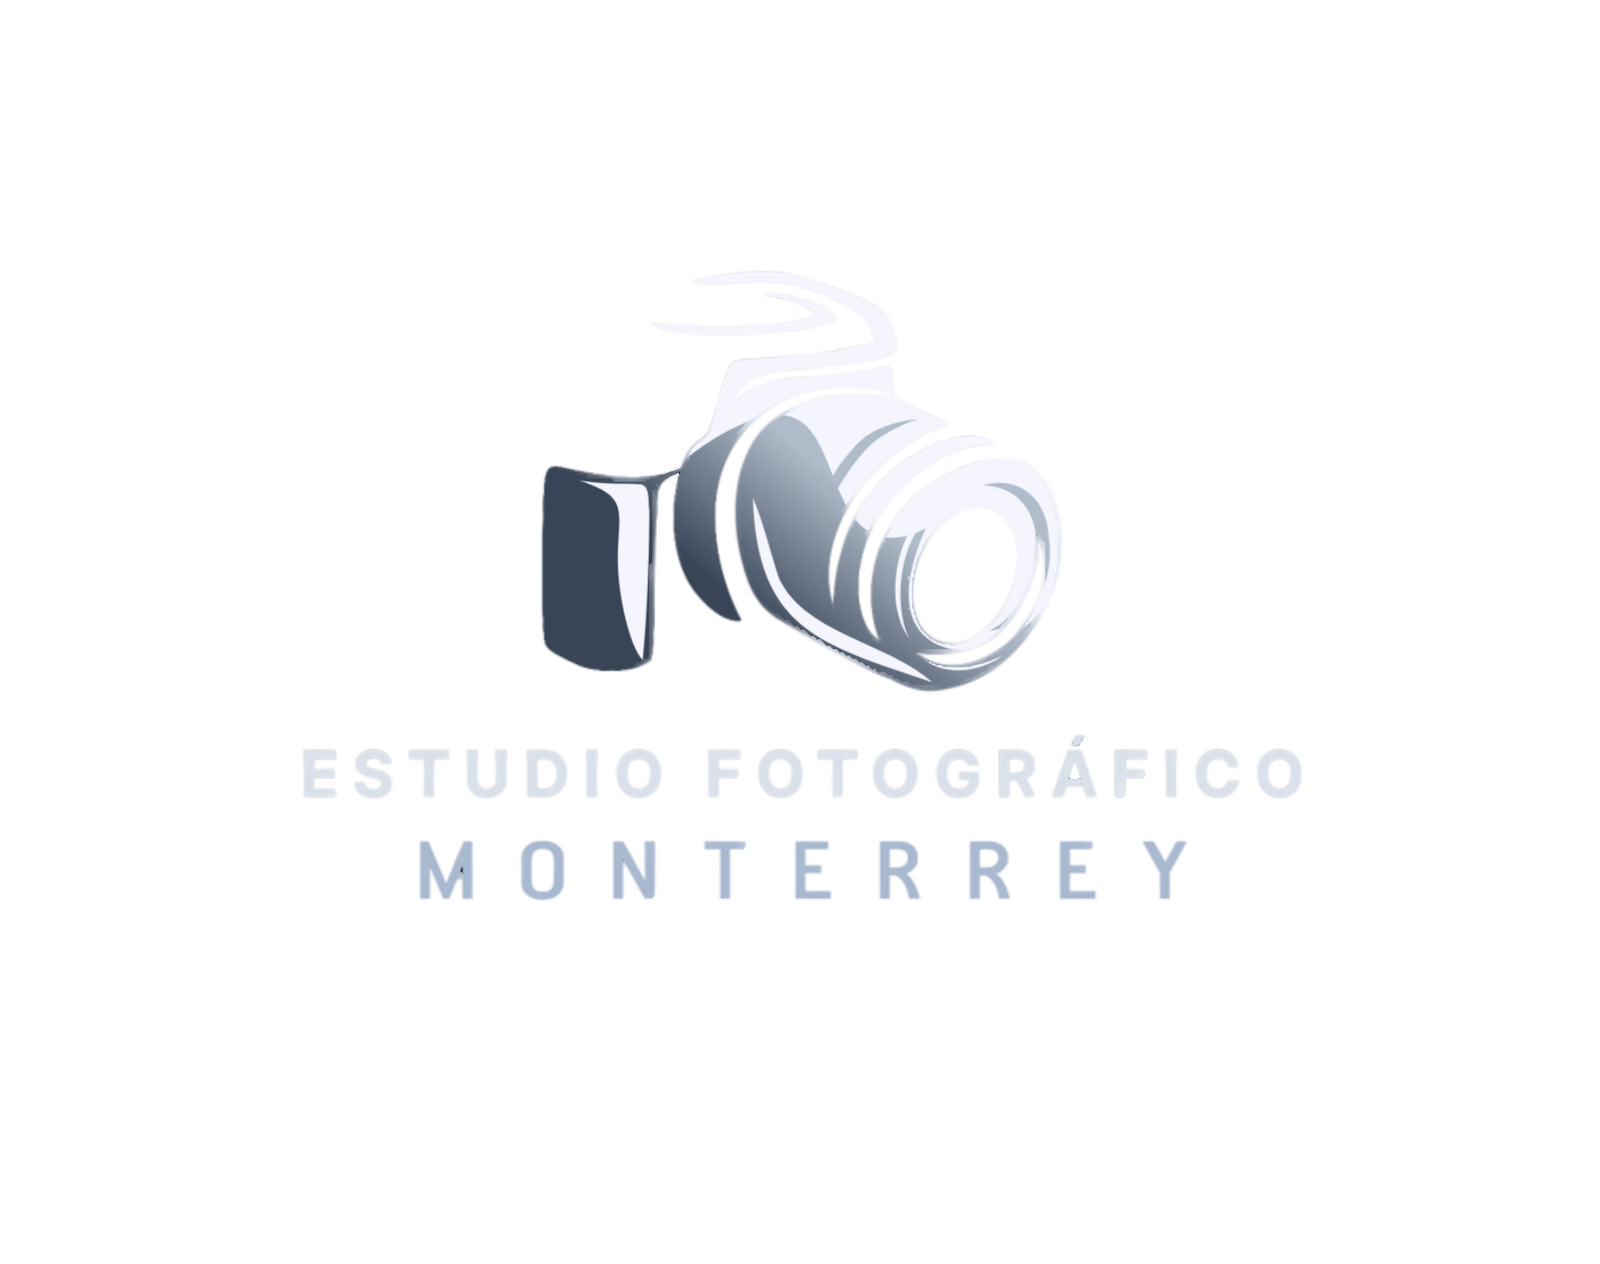 estudio fotografico mty logo